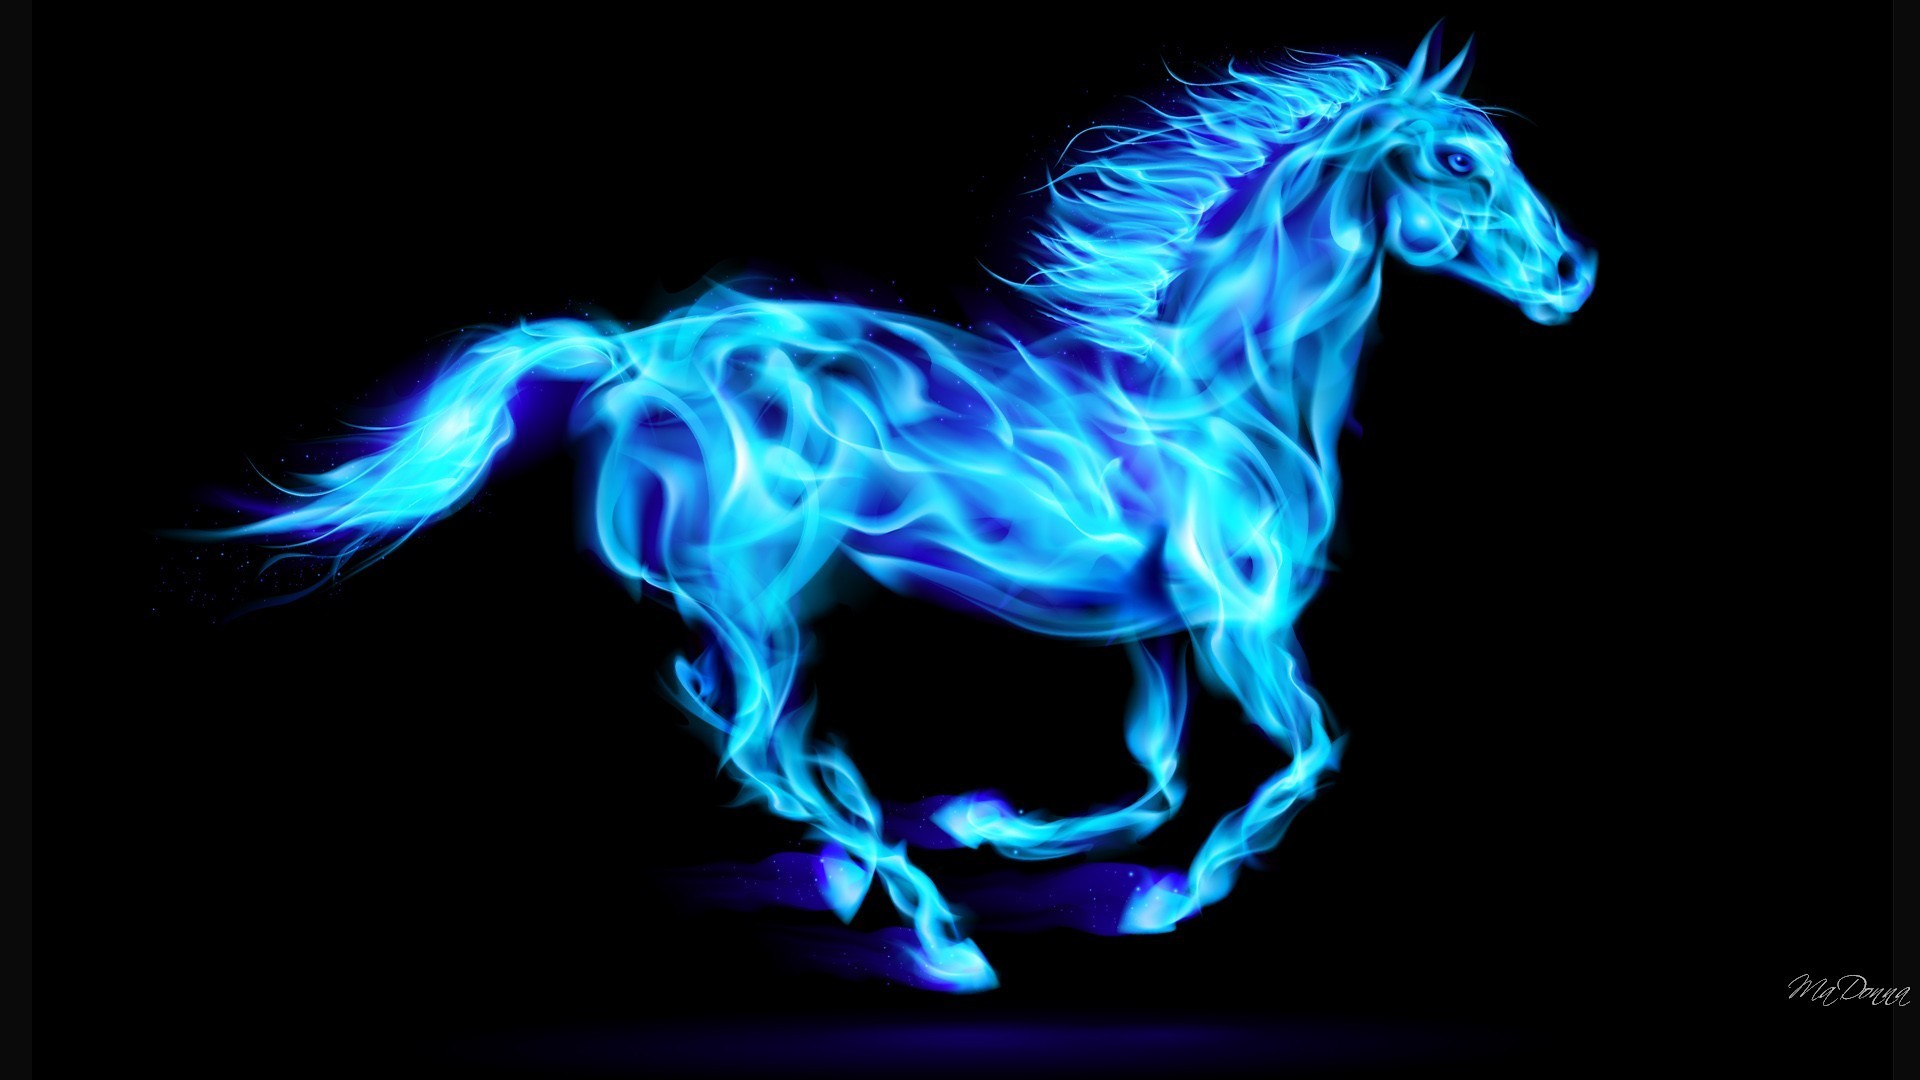 coole pferdetapeten,blau,pferd,elektrisches blau,mähne,grafikdesign